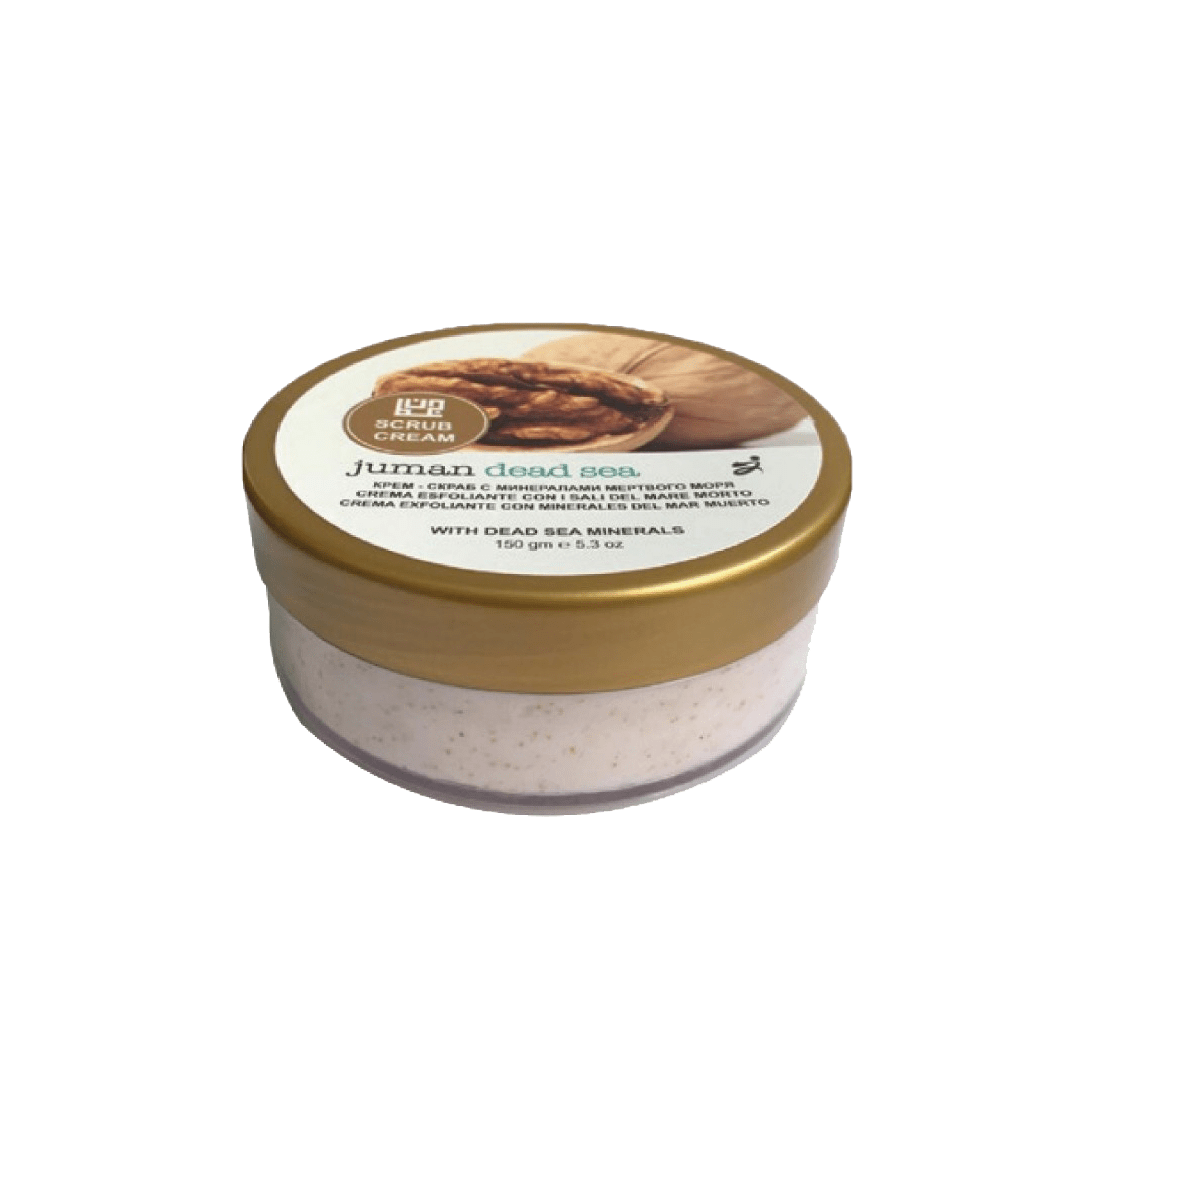 Scrub Cream with Dead Sea Minerals